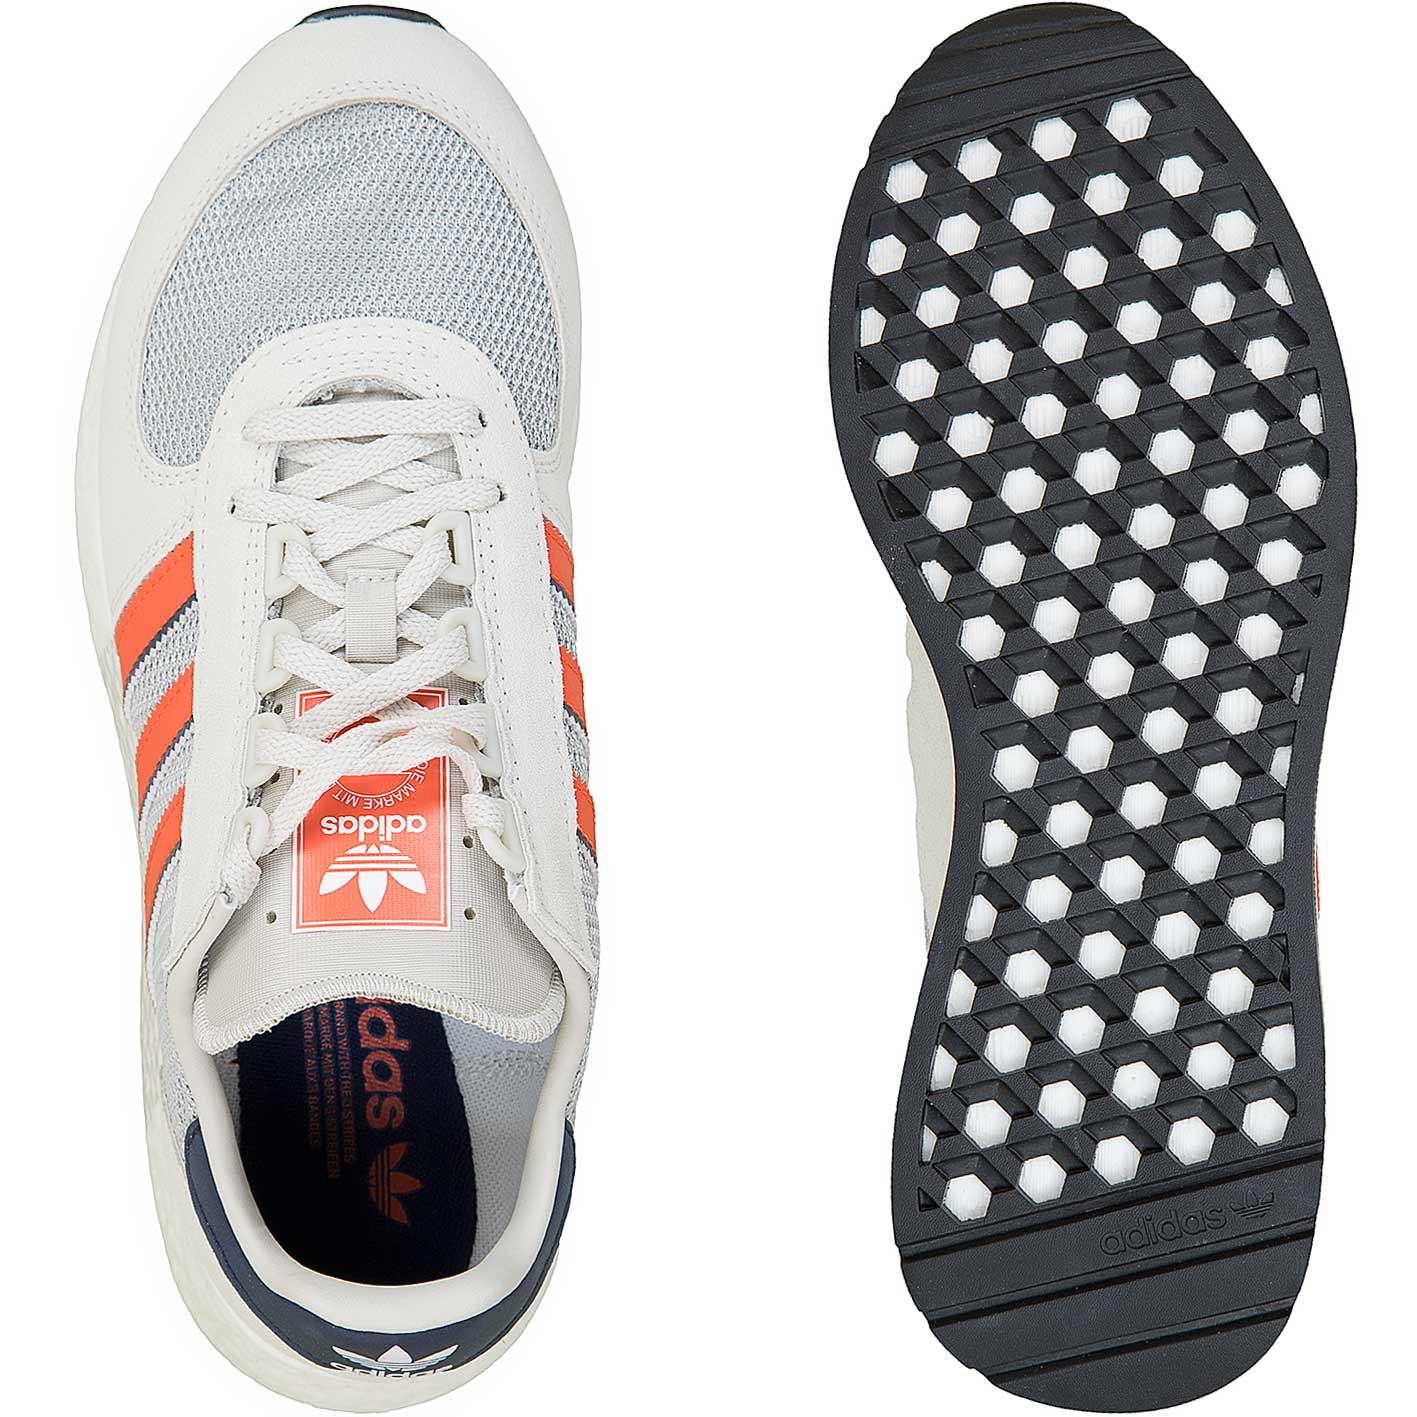 ☆ Adidas Originals Sneaker Marathon Tech weiß/orange - hier bestellen!